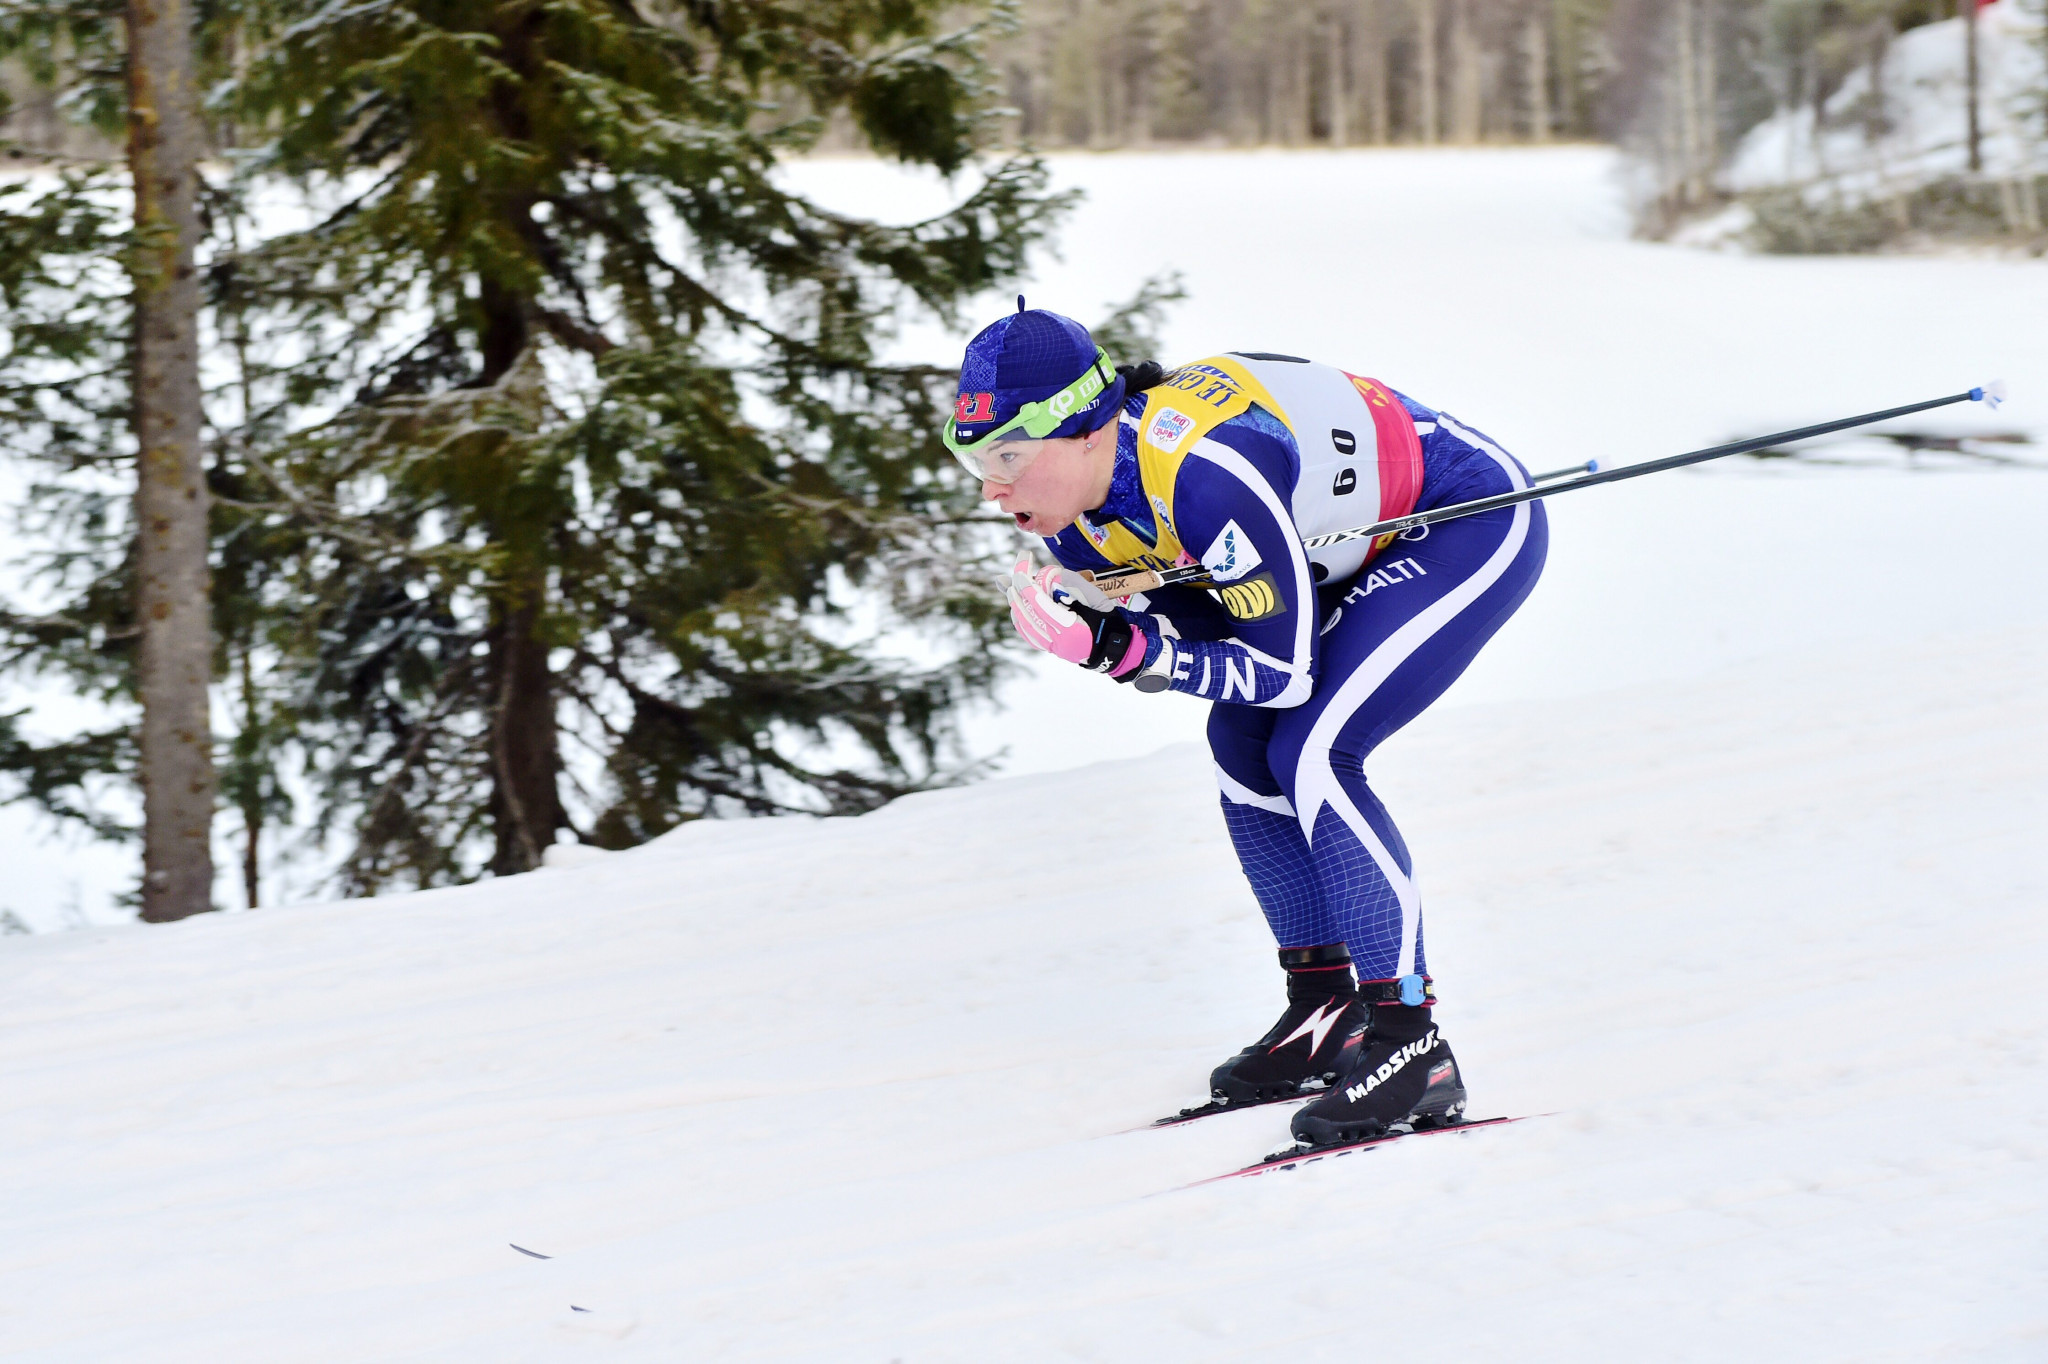 Toblach set to hold first stop of FIS Tour de Ski